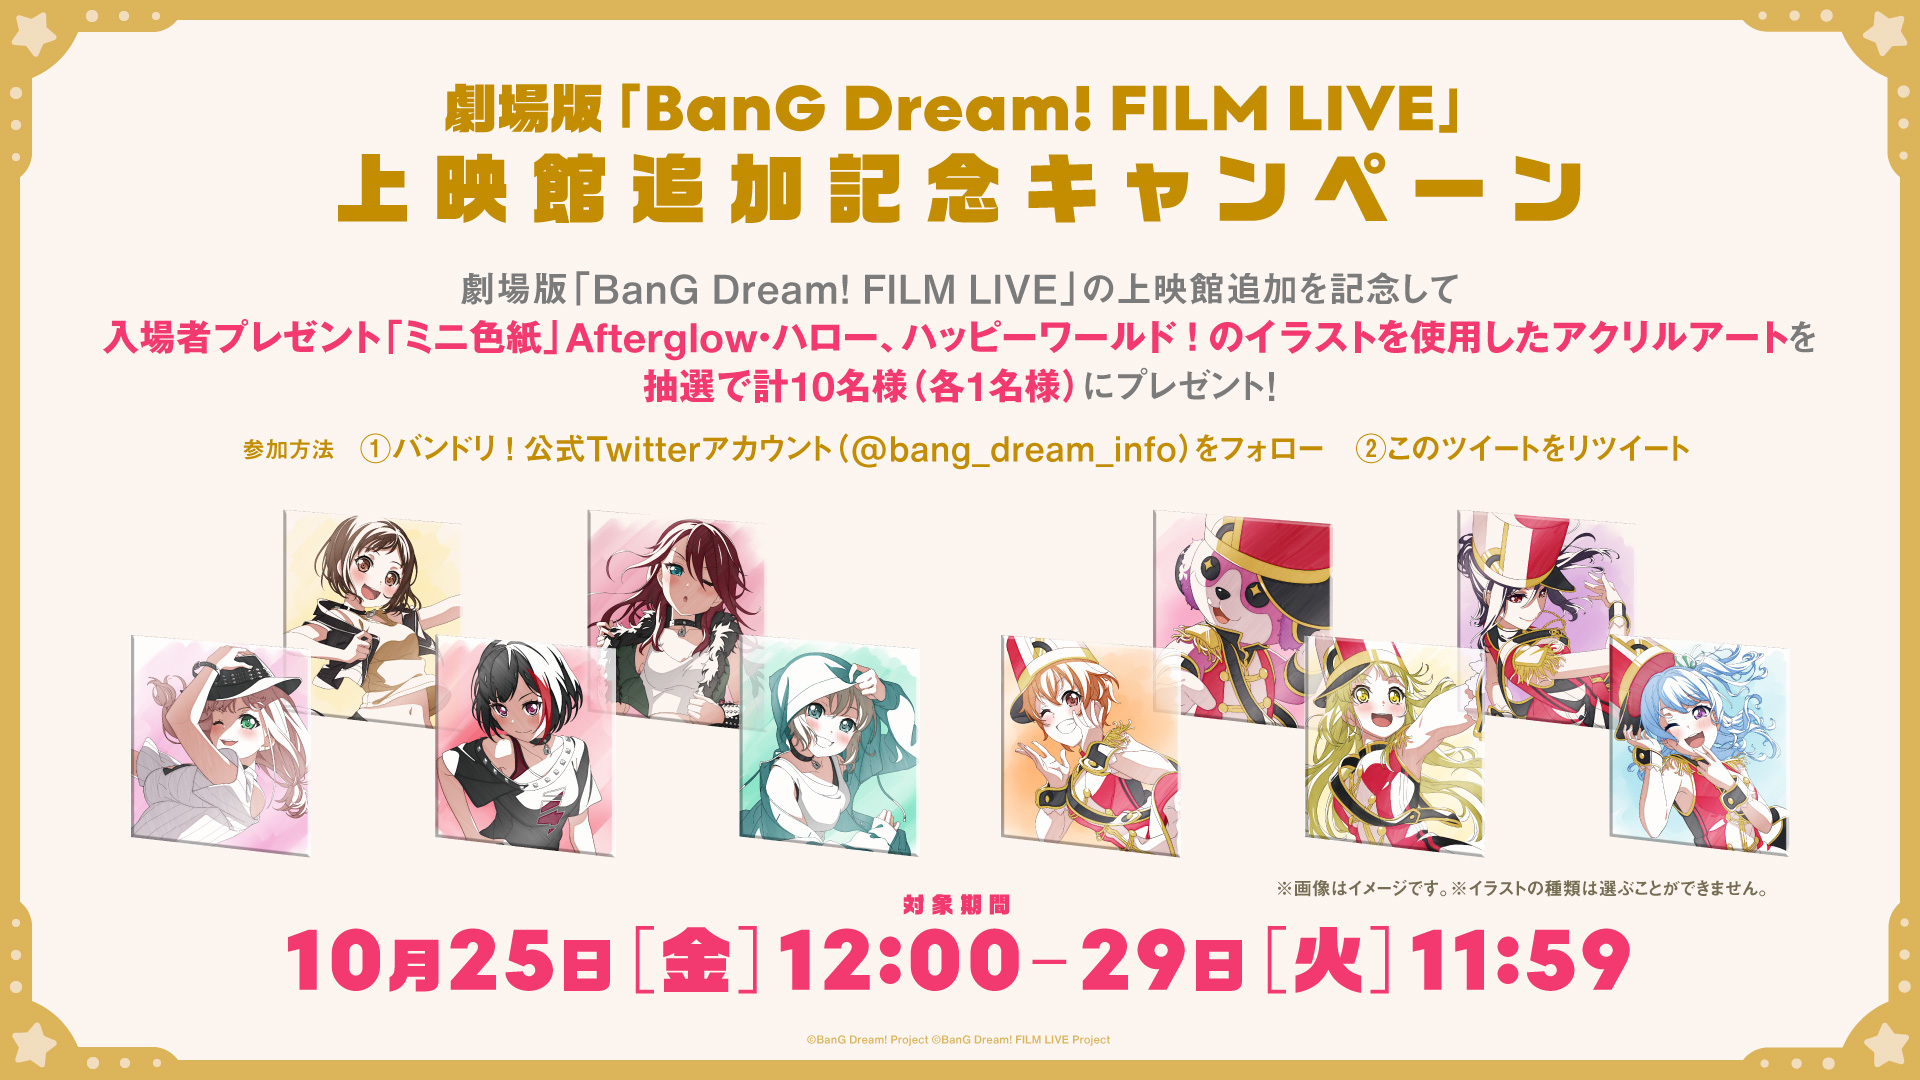 (C)BanG Dream! Project (C)BanG Dream! FILM LIVE Project